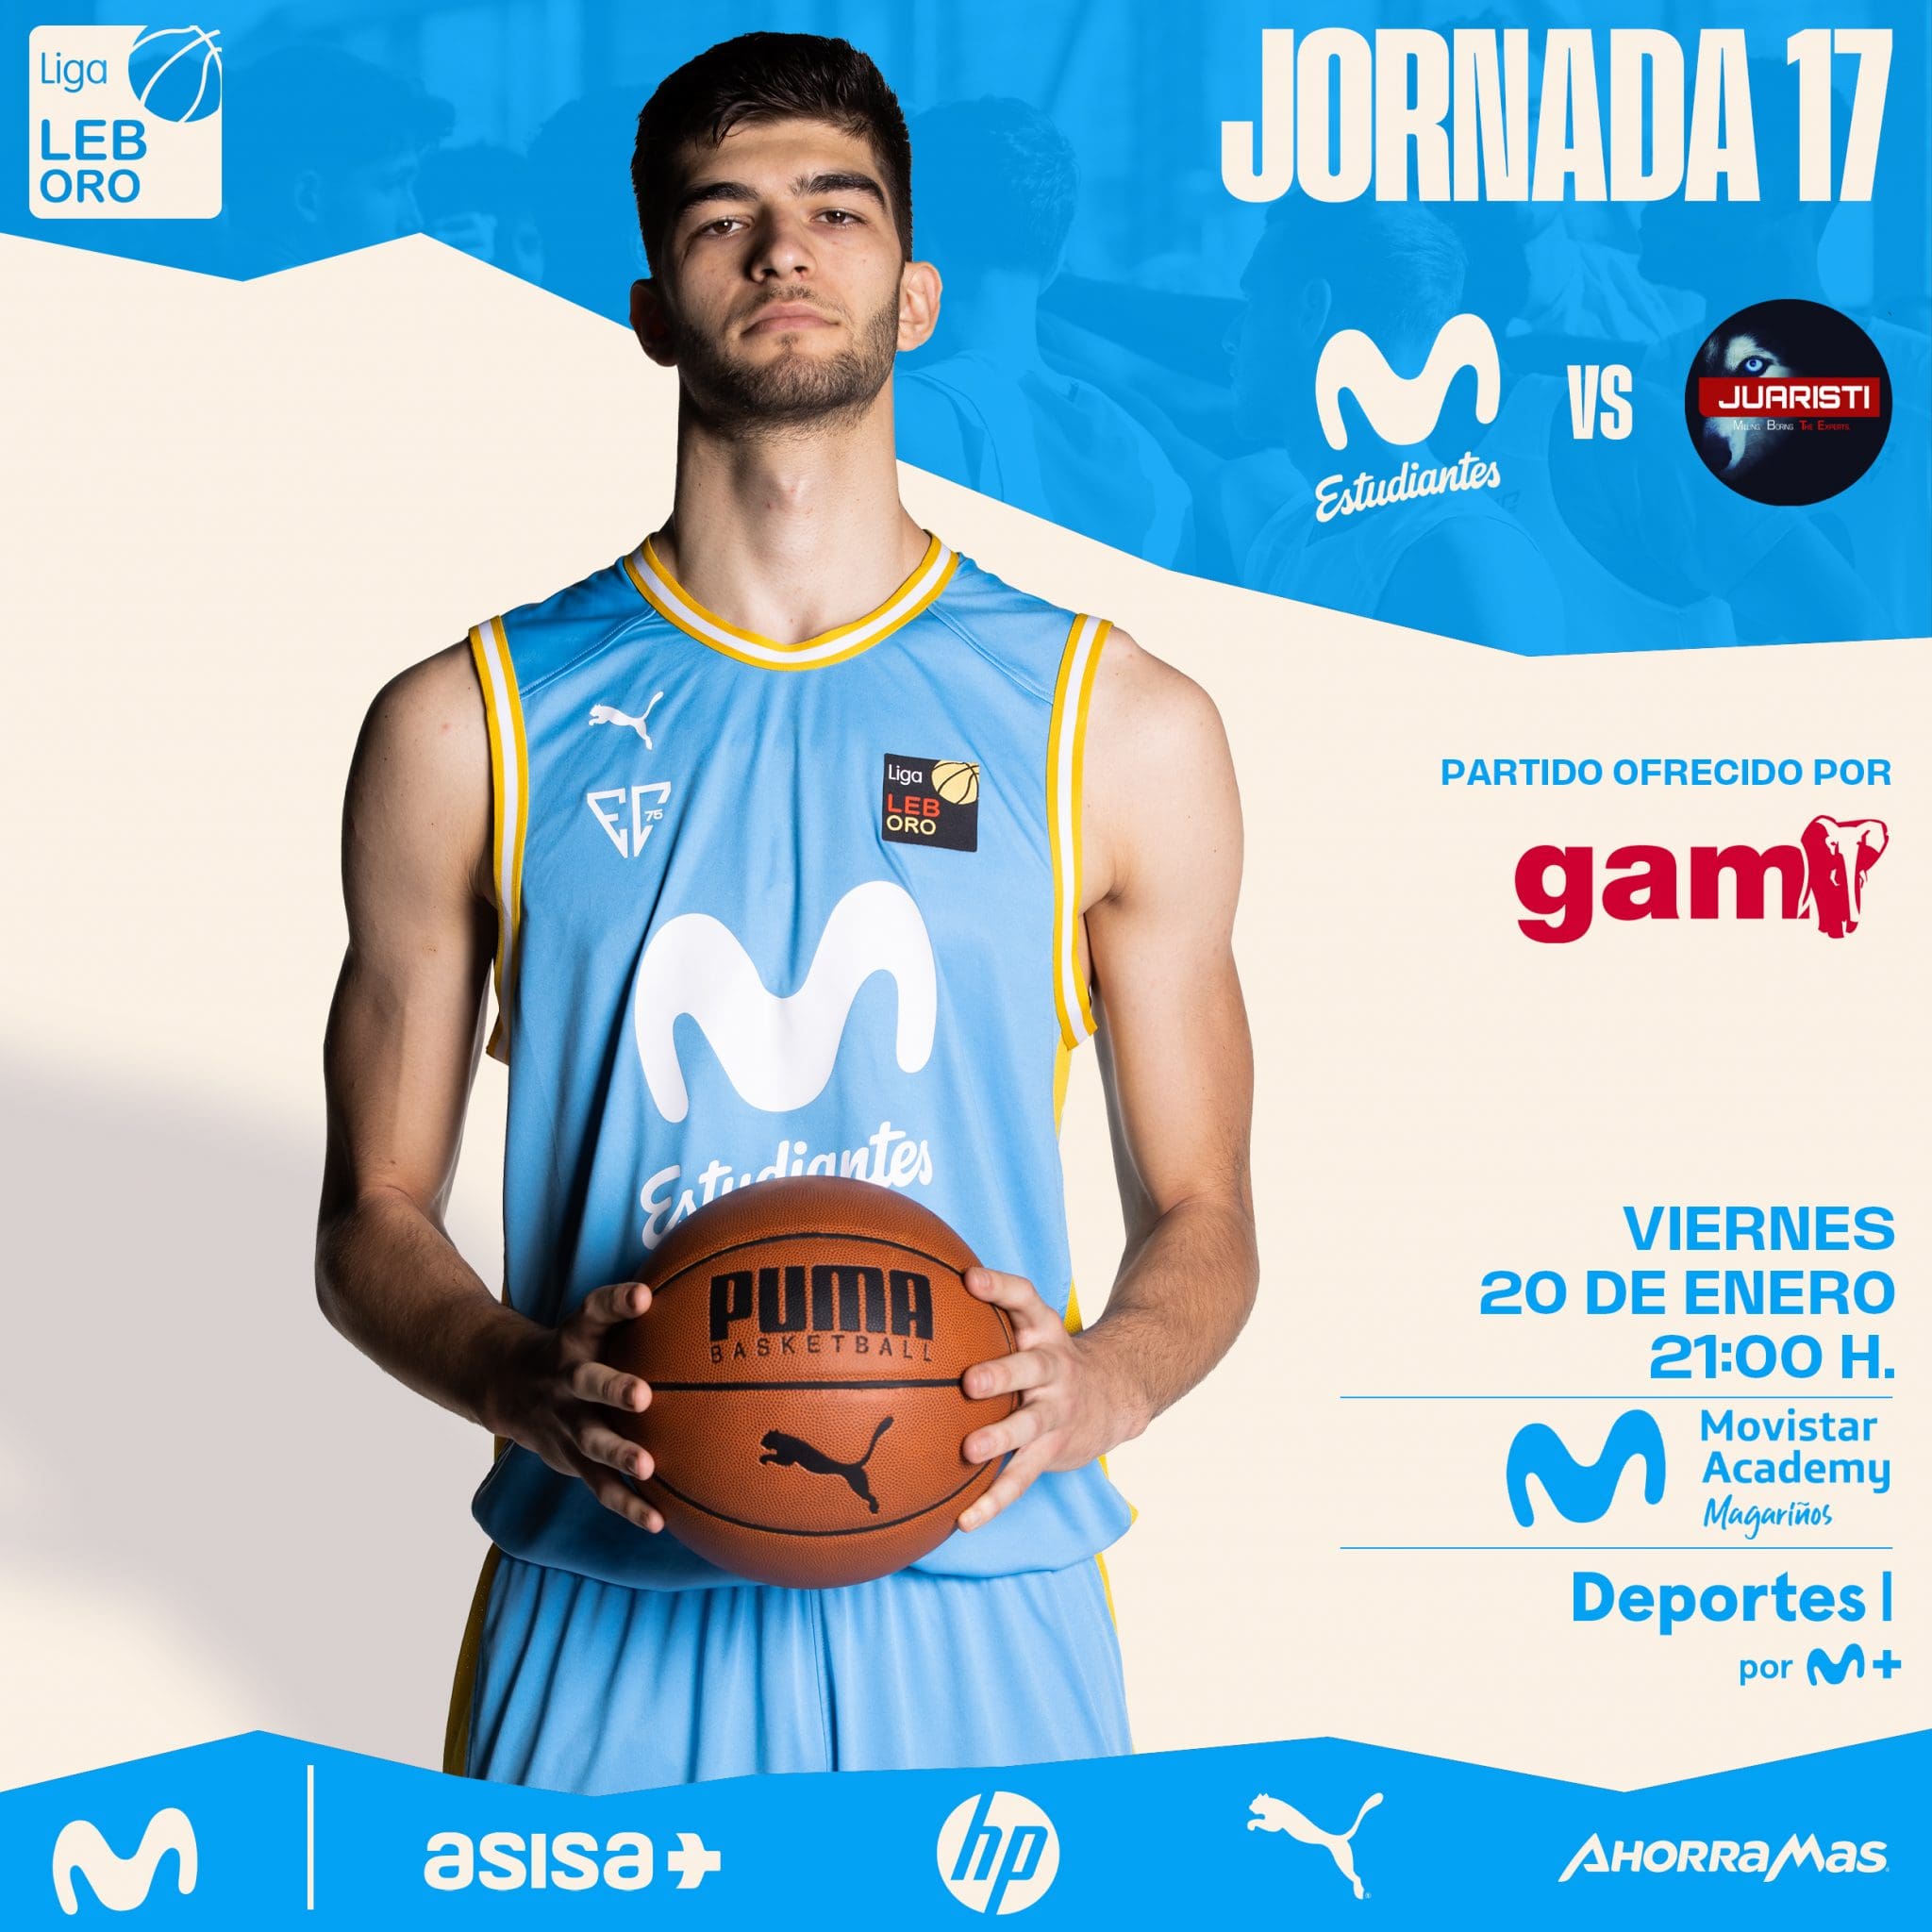 Oficial: jornada 17 contra Juaristi viernes 20 en Movistar Academy Magariños